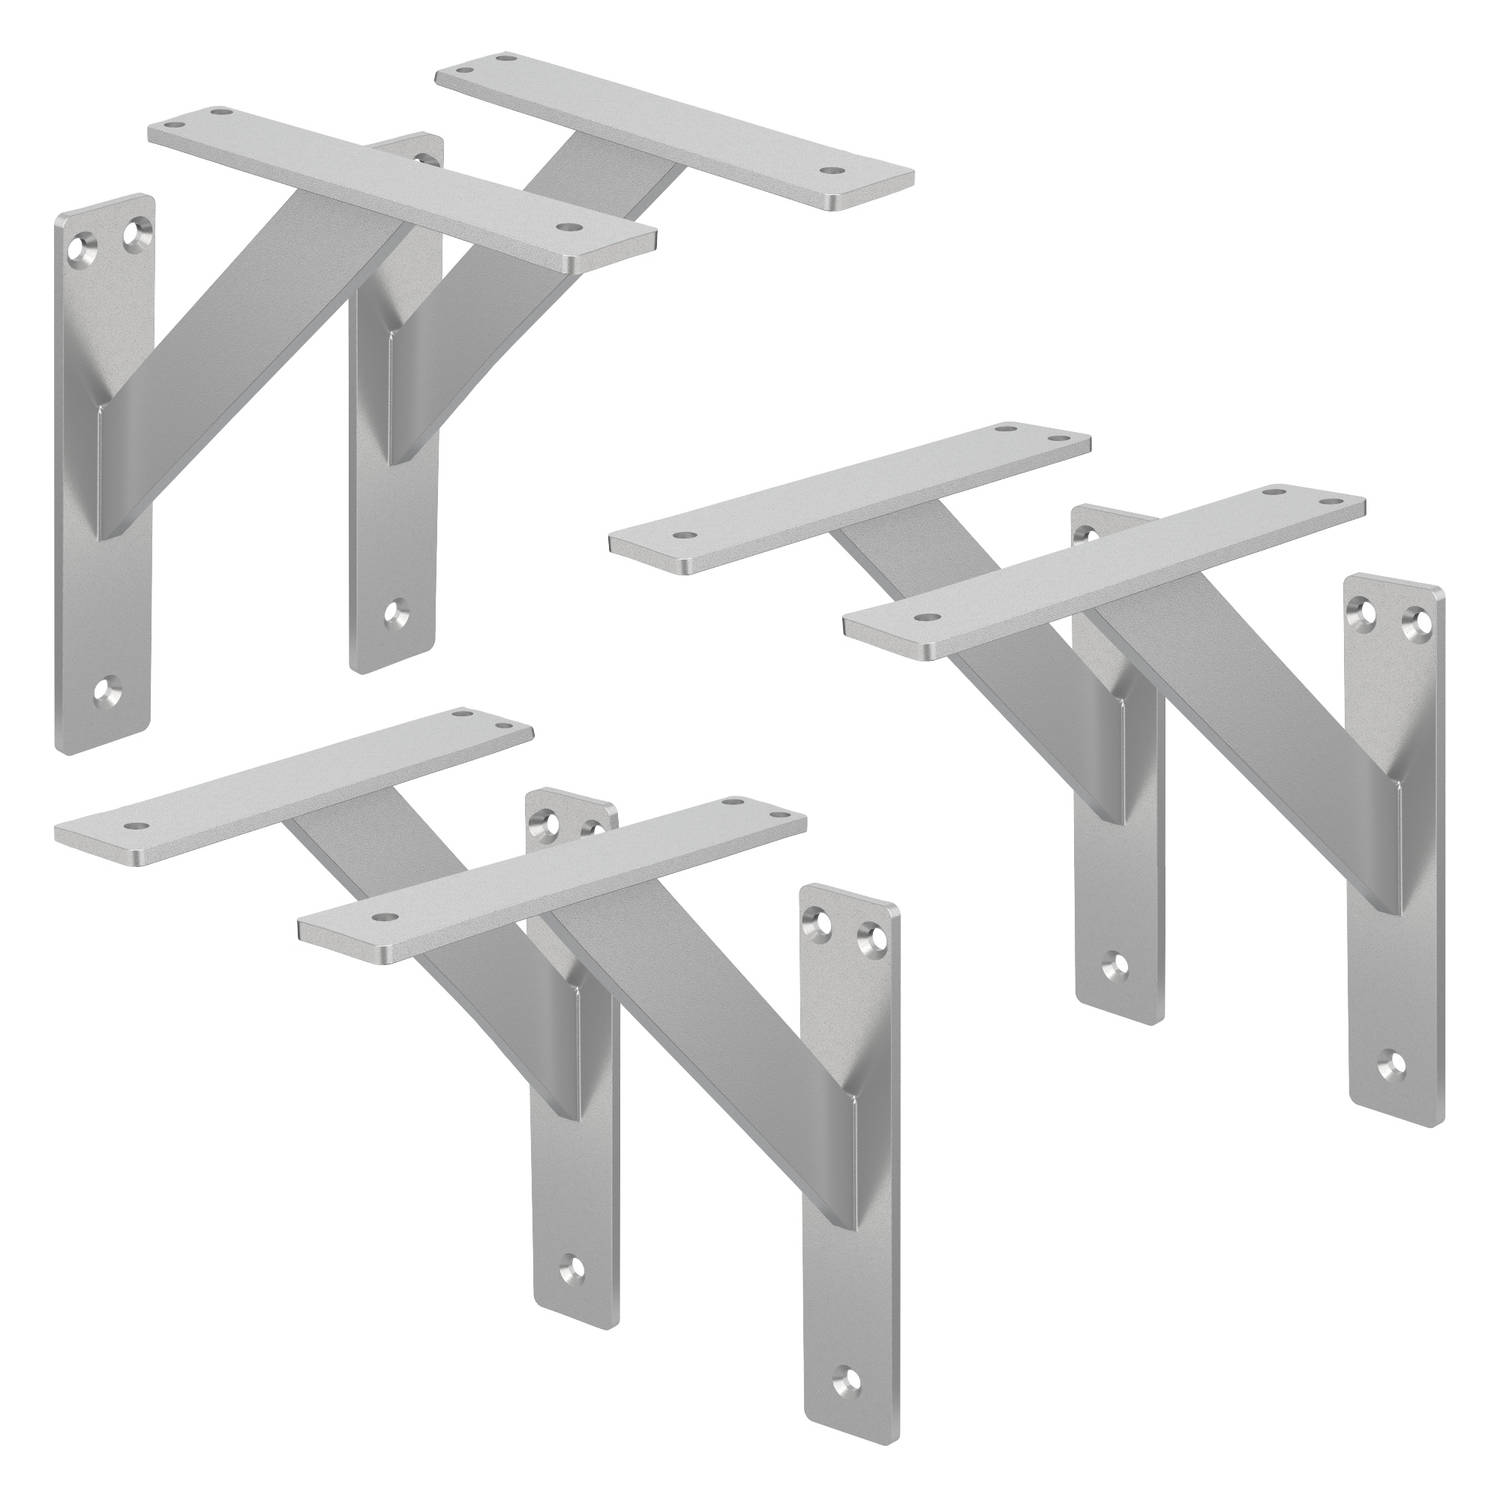 ML-Design 6 stuks plankdrager 180x180 mm, zilver, aluminium, zwevende plankdrager, plankdrager, wanddrager voor plankdrager, plankdrager voor wandmontage, wandplankdrager plankdrag